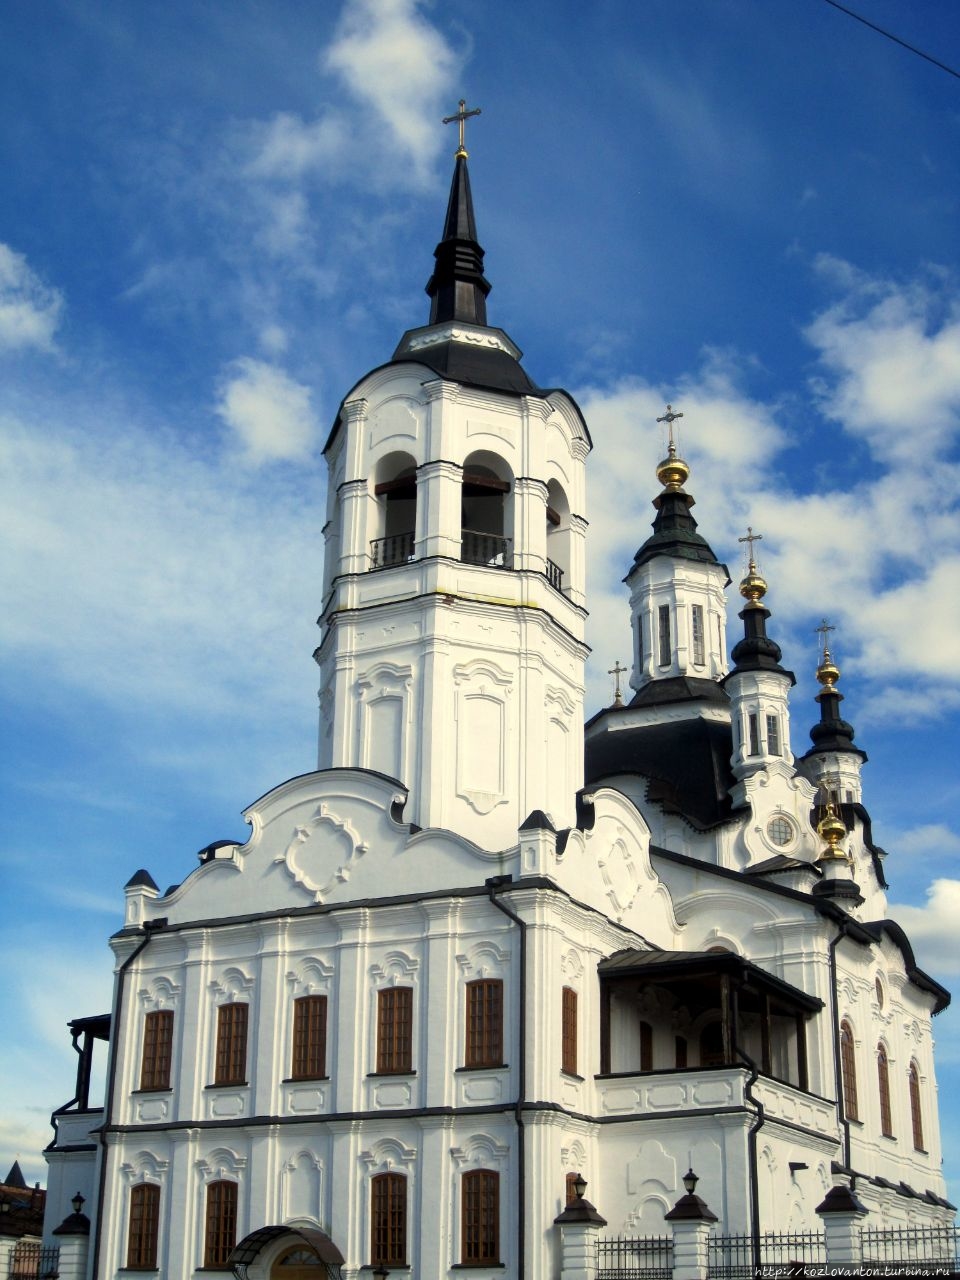 Здесь в 1828-32 г.г. отбывал церковное покаяние автор романса Соловей А.А.Алябьев, а в 1836-39 г.г. в приходе проживал автор Конька-горбунка П.П.Ершов. Тобольск, Россия